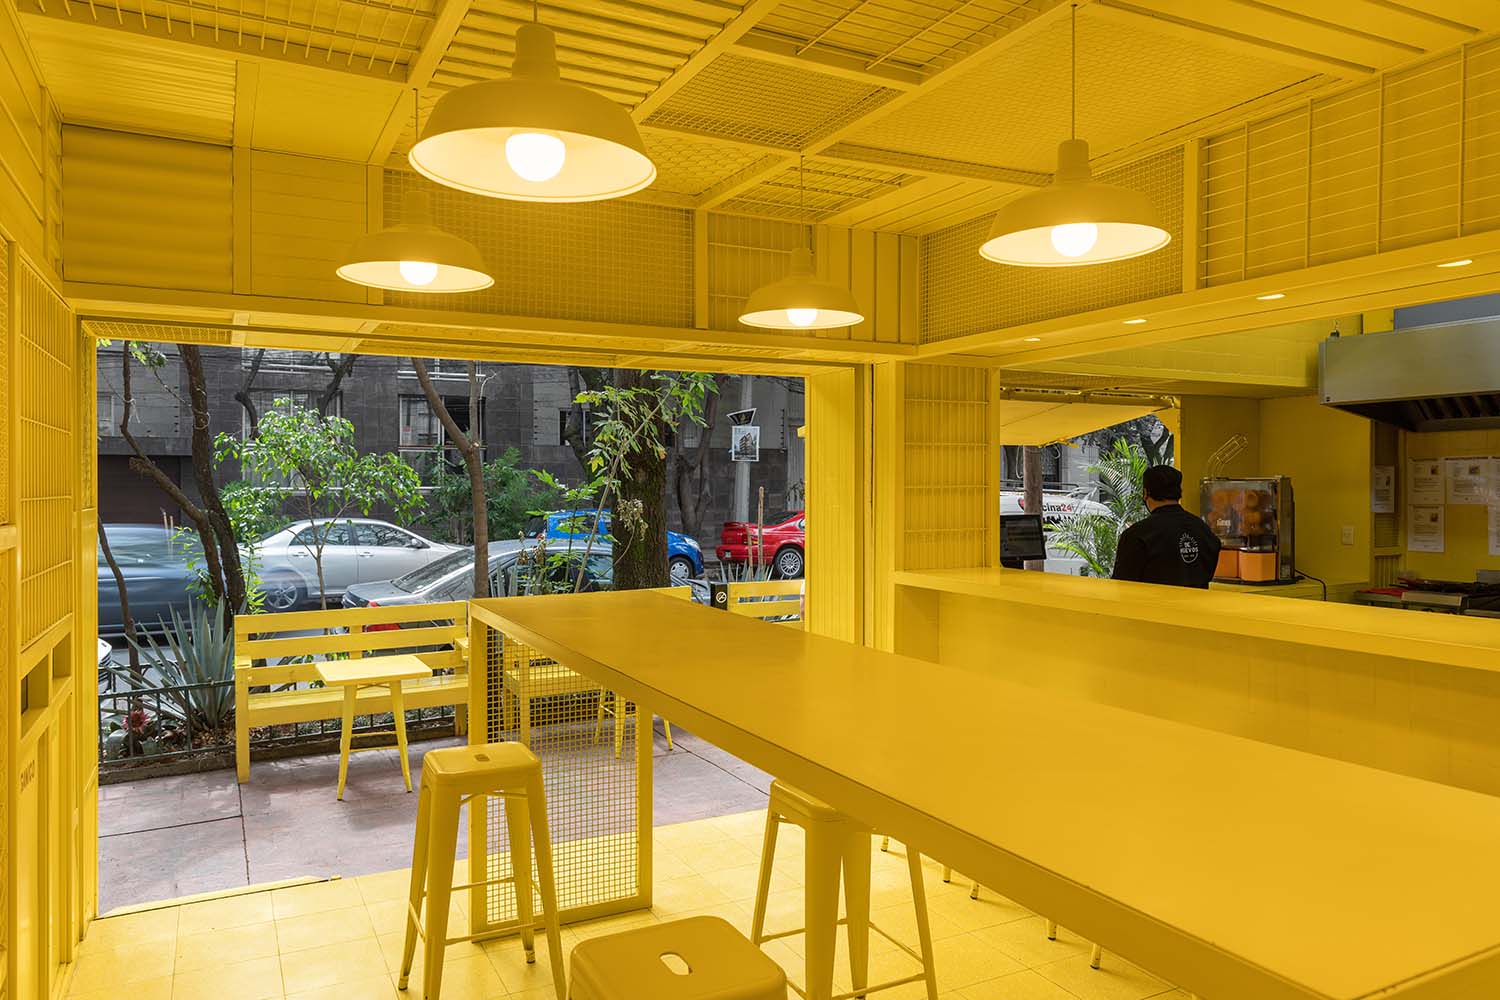 De Huevos Mexico City, Condesa Restaurant Designed by Cadena + Asoc. Concept Design